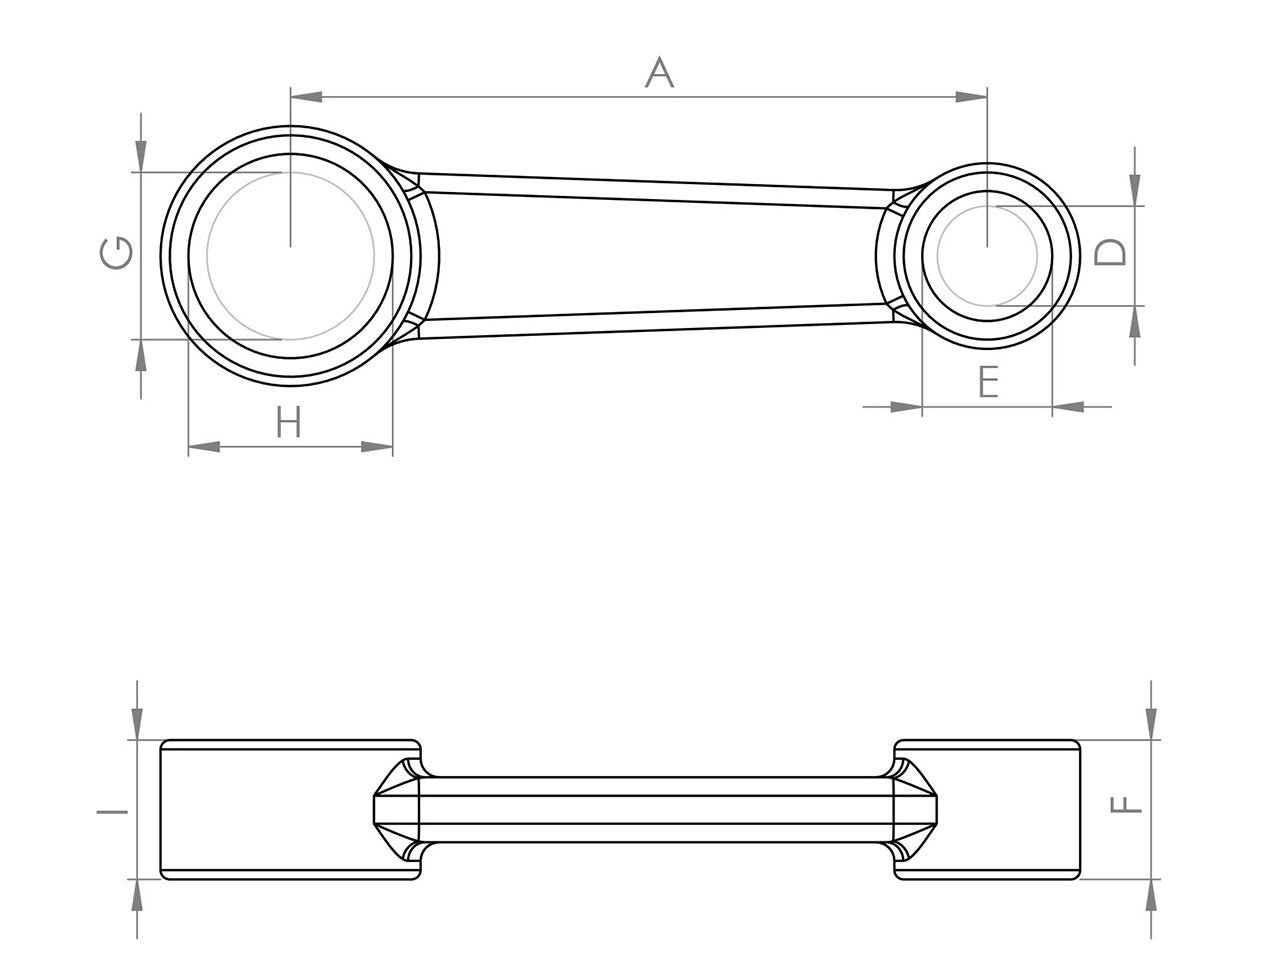 Zeichnung Barikit Pleuel für einen CPI Aragon Roller Motor mit Bemaßung.